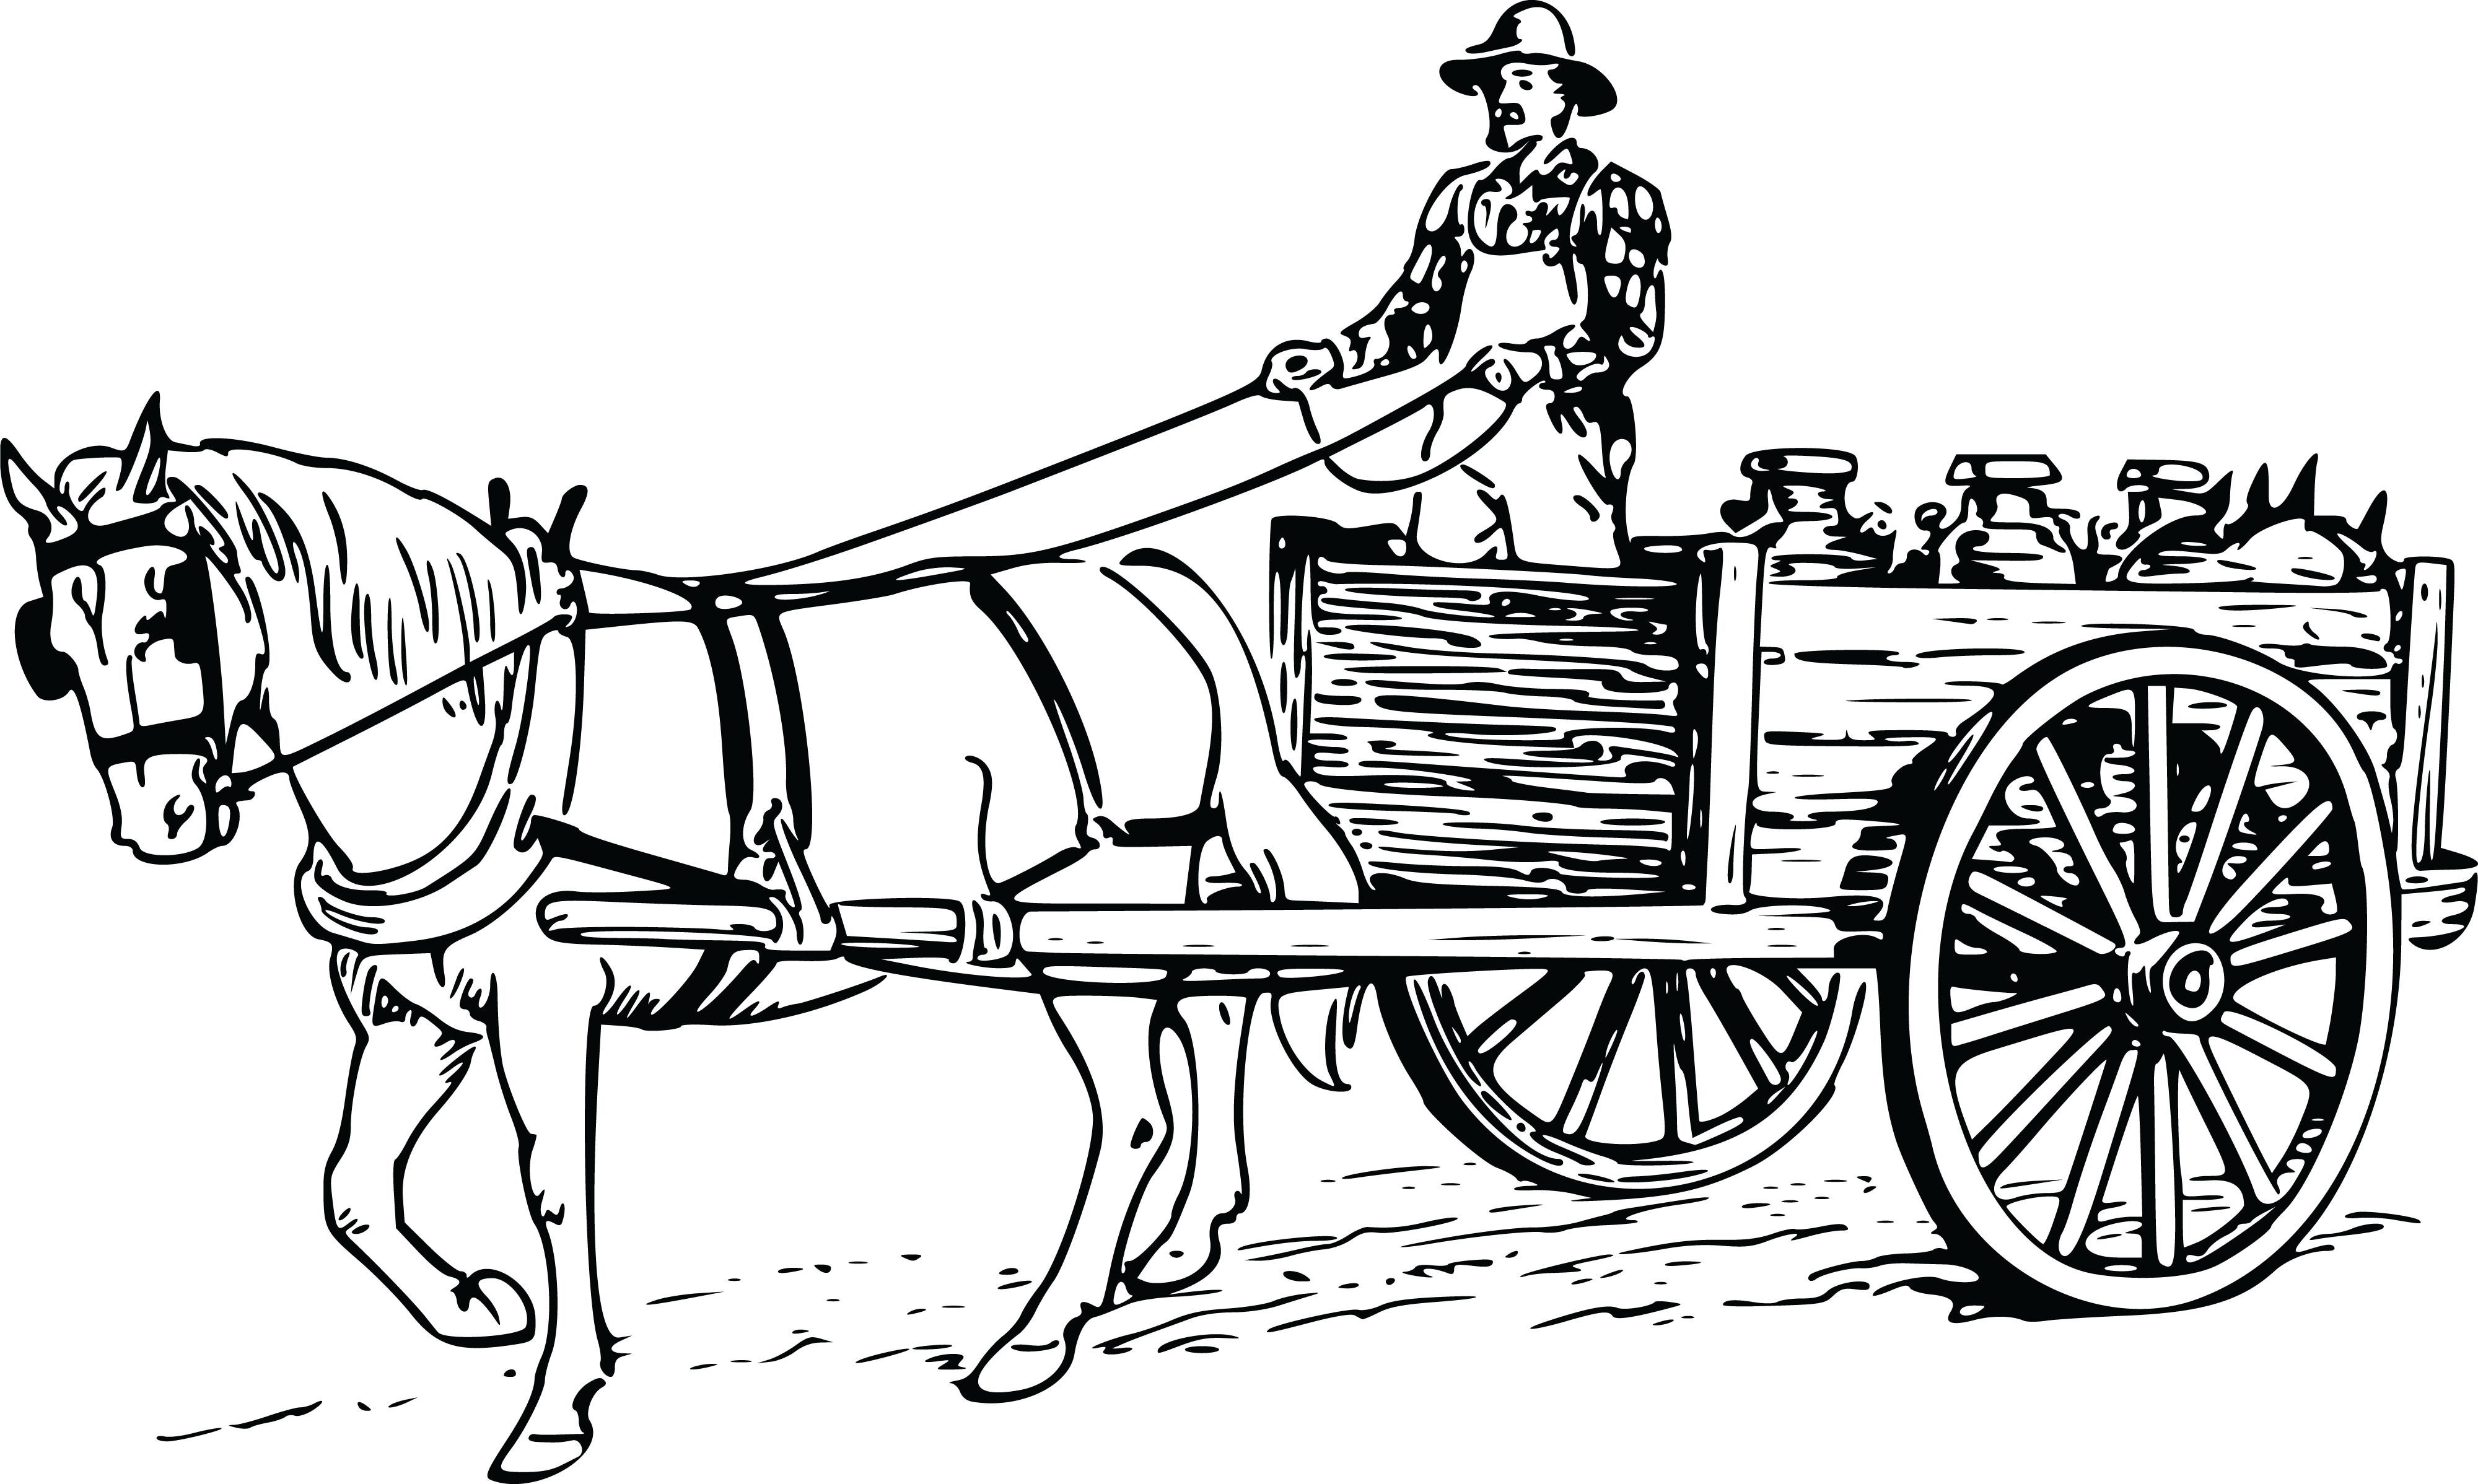 Free Clipart Of A Farmer Driving a Horse Drawn Cart